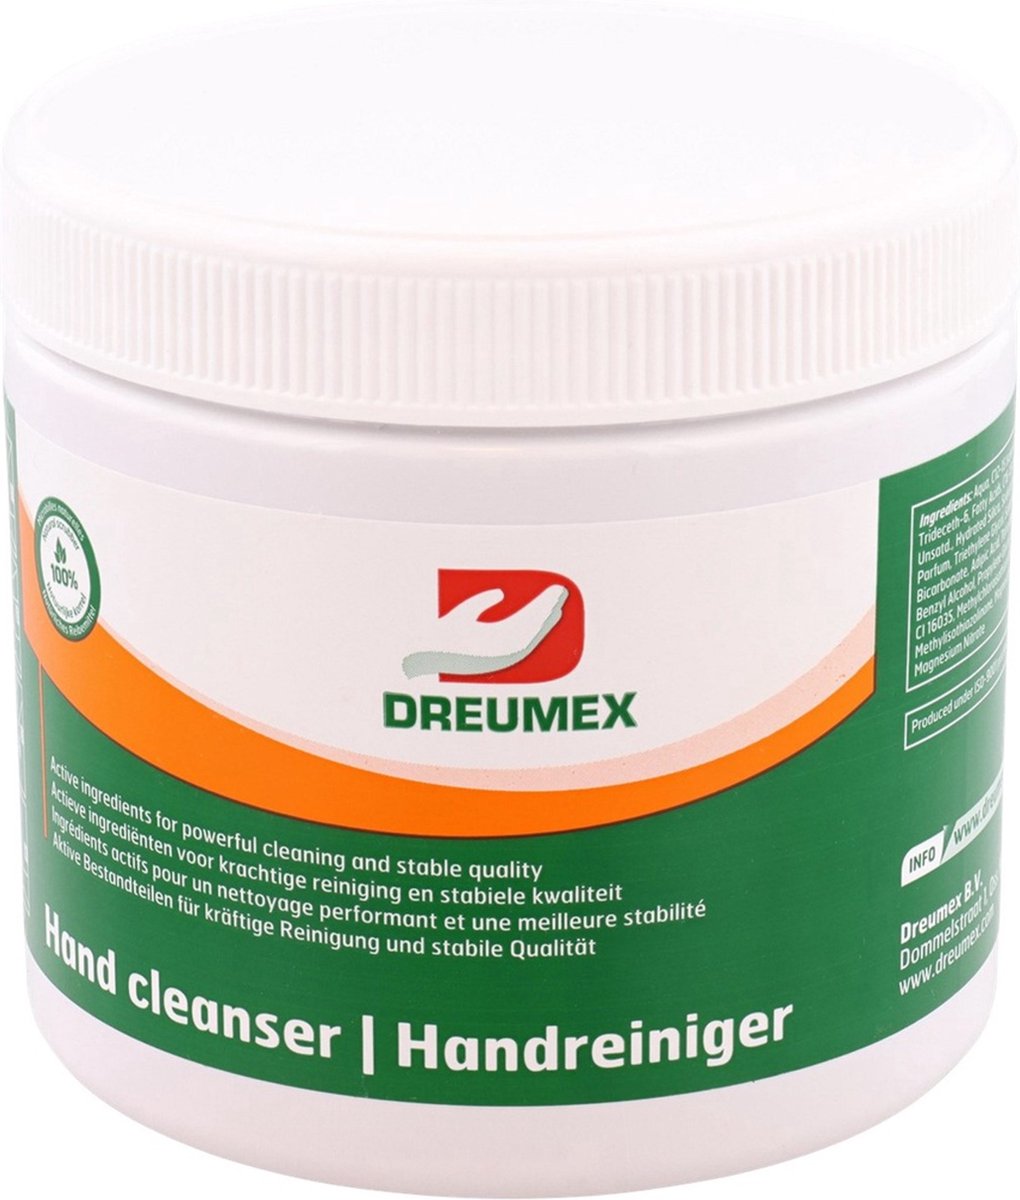 Dreumex Handreiniger - Hand Cleanser - 6 stuks